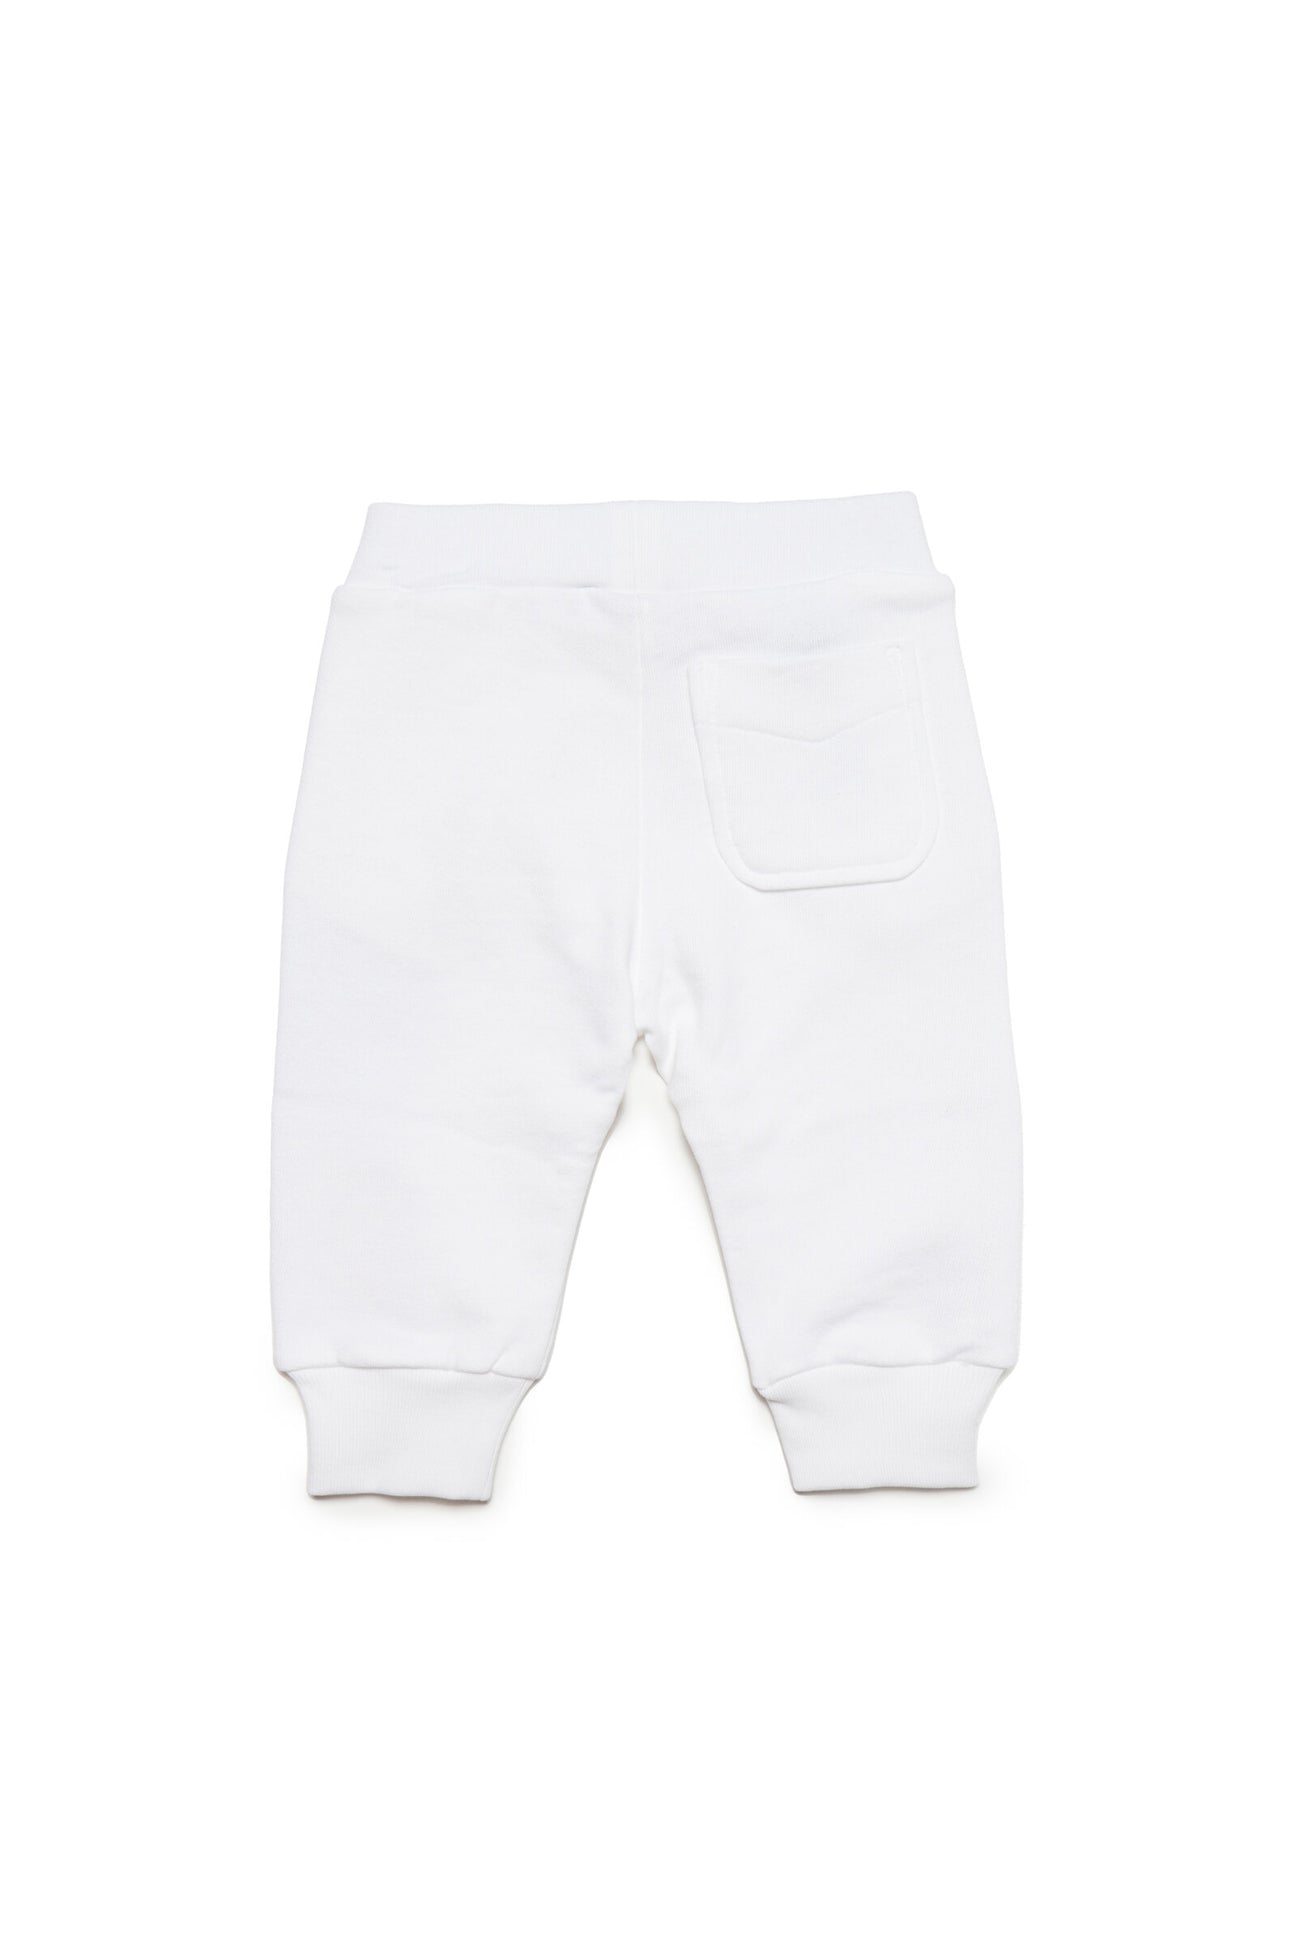 Pantaloni jogger bianchi con logo Diesel double e taschino sul retro Pantaloni jogger bianchi con logo Diesel double e taschino sul retro